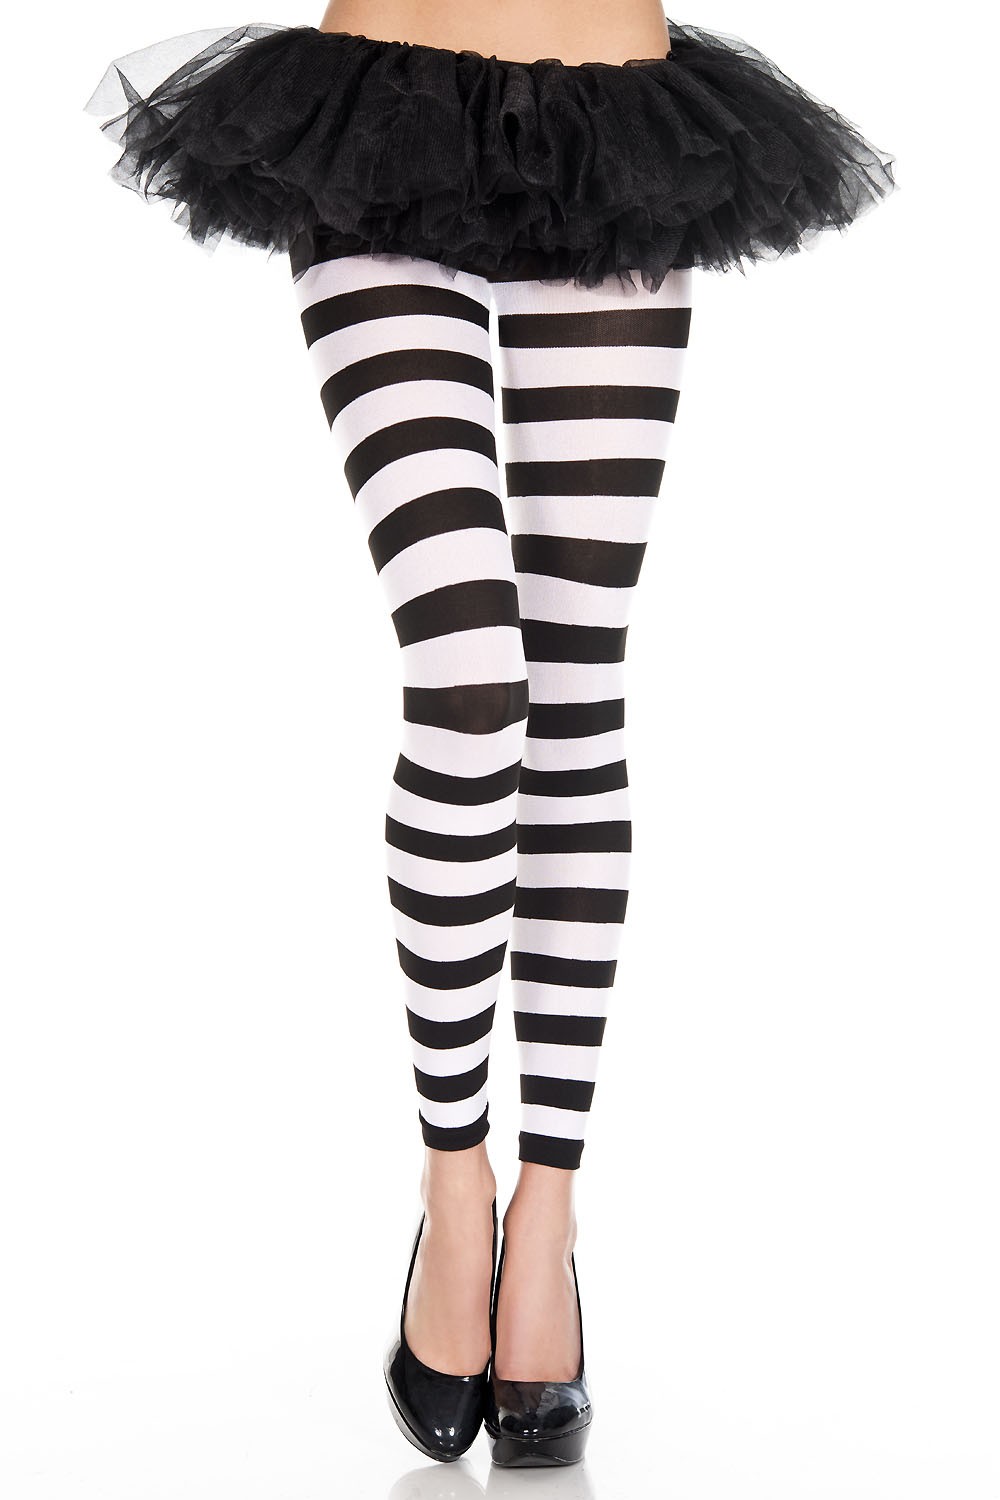 https://www.thecostumeland.com/images/zoom/ml35849-striped-leggings-black-and-white.jpg